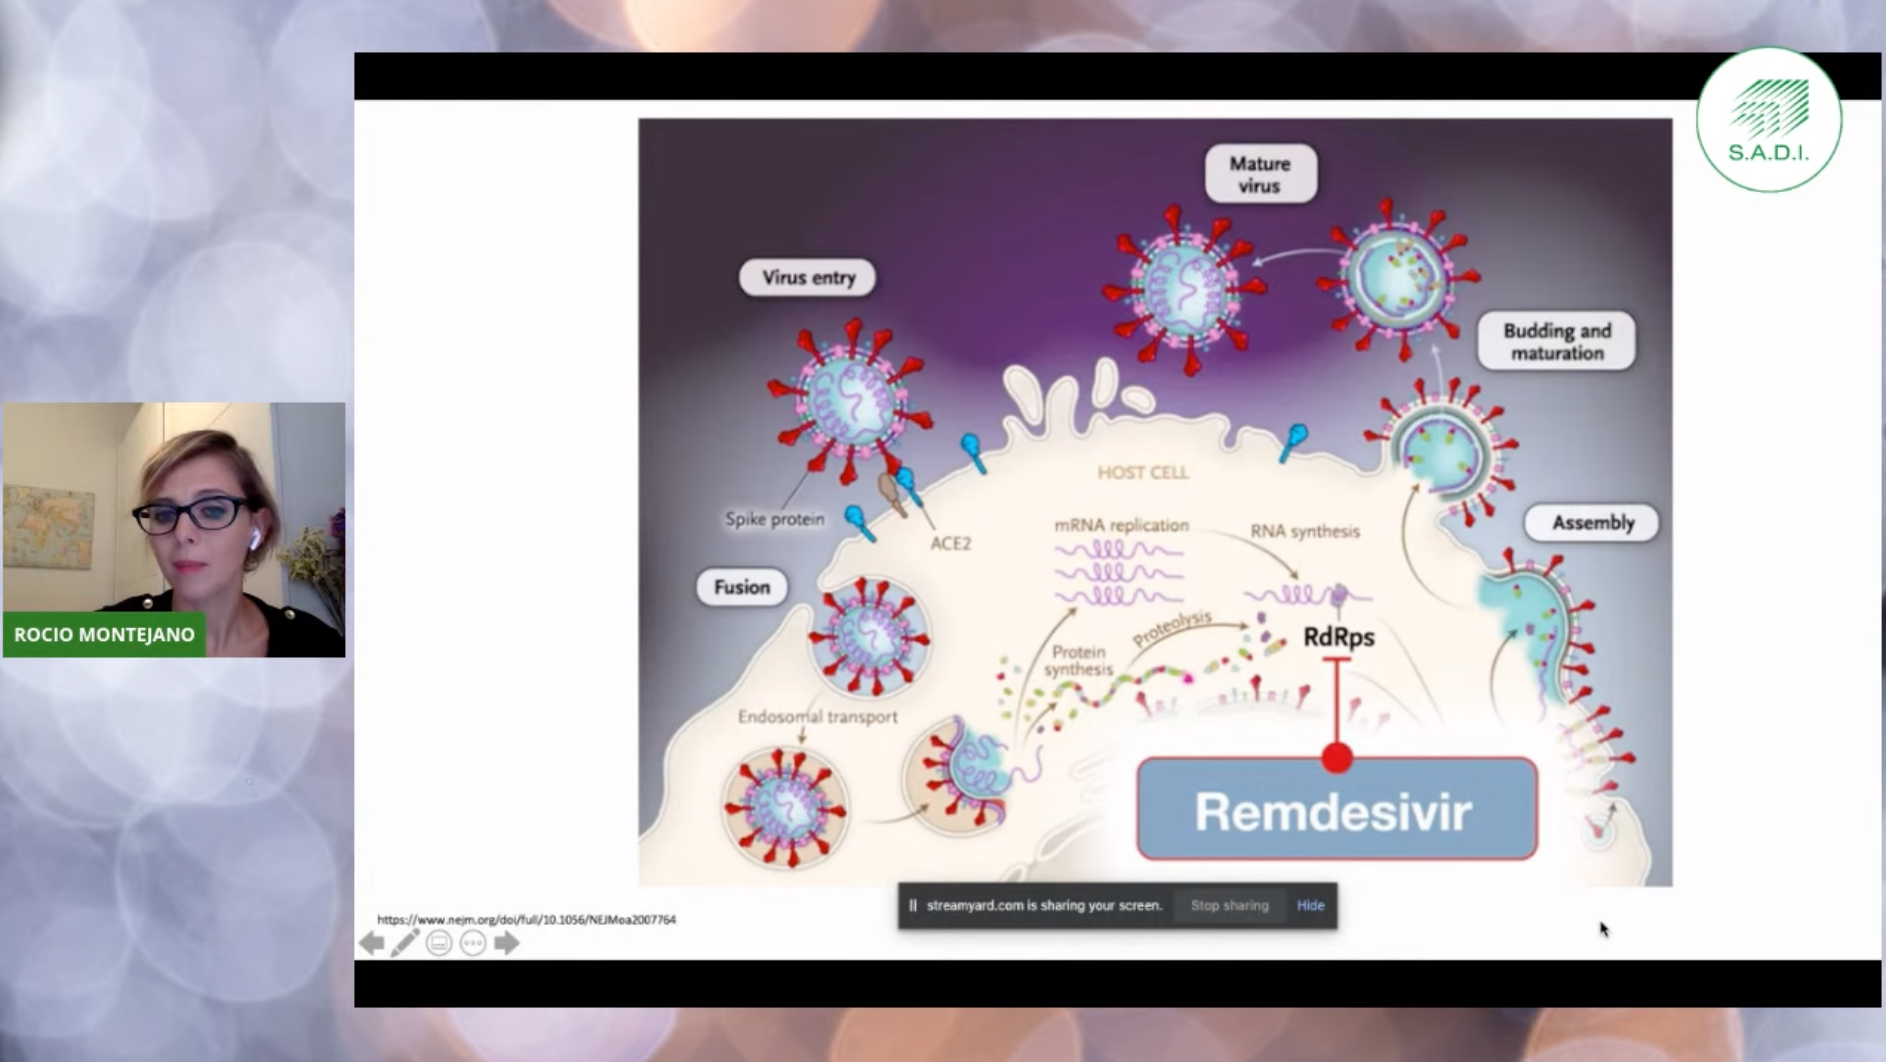 Remdesivir actúa engullendo una enzima que algunos virus, incluido el SARS-CoV-2, utilizan para replicarse. En febrero, los investigadores demostraron que el fármaco reduce la infección viral en células humanas cultivadas en un laboratorio 